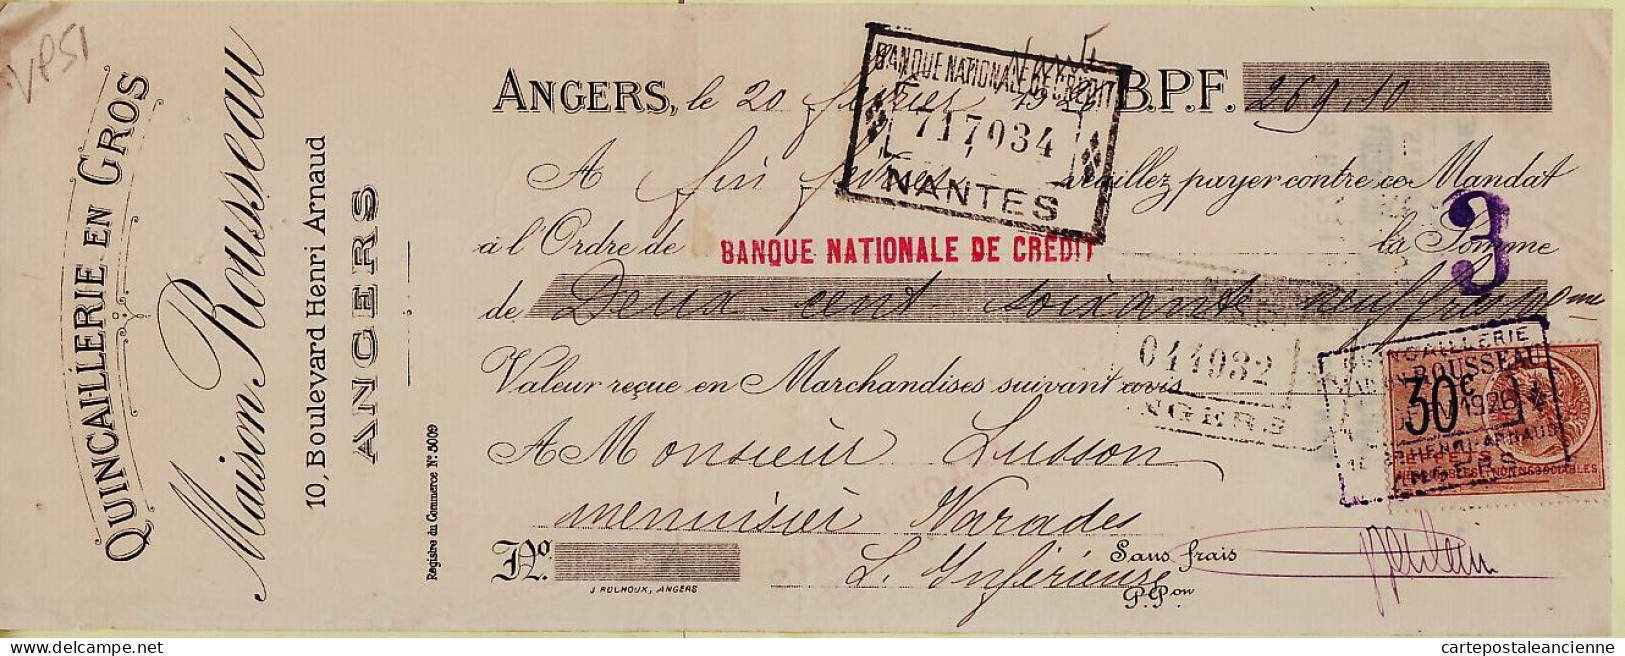 31266 / Quincaillerie En Gros ROUSSEAU Angers Lettre De Change 20.02.1926 à LUSSON Menuiserie Varades Timbre Fiscal - Wissels